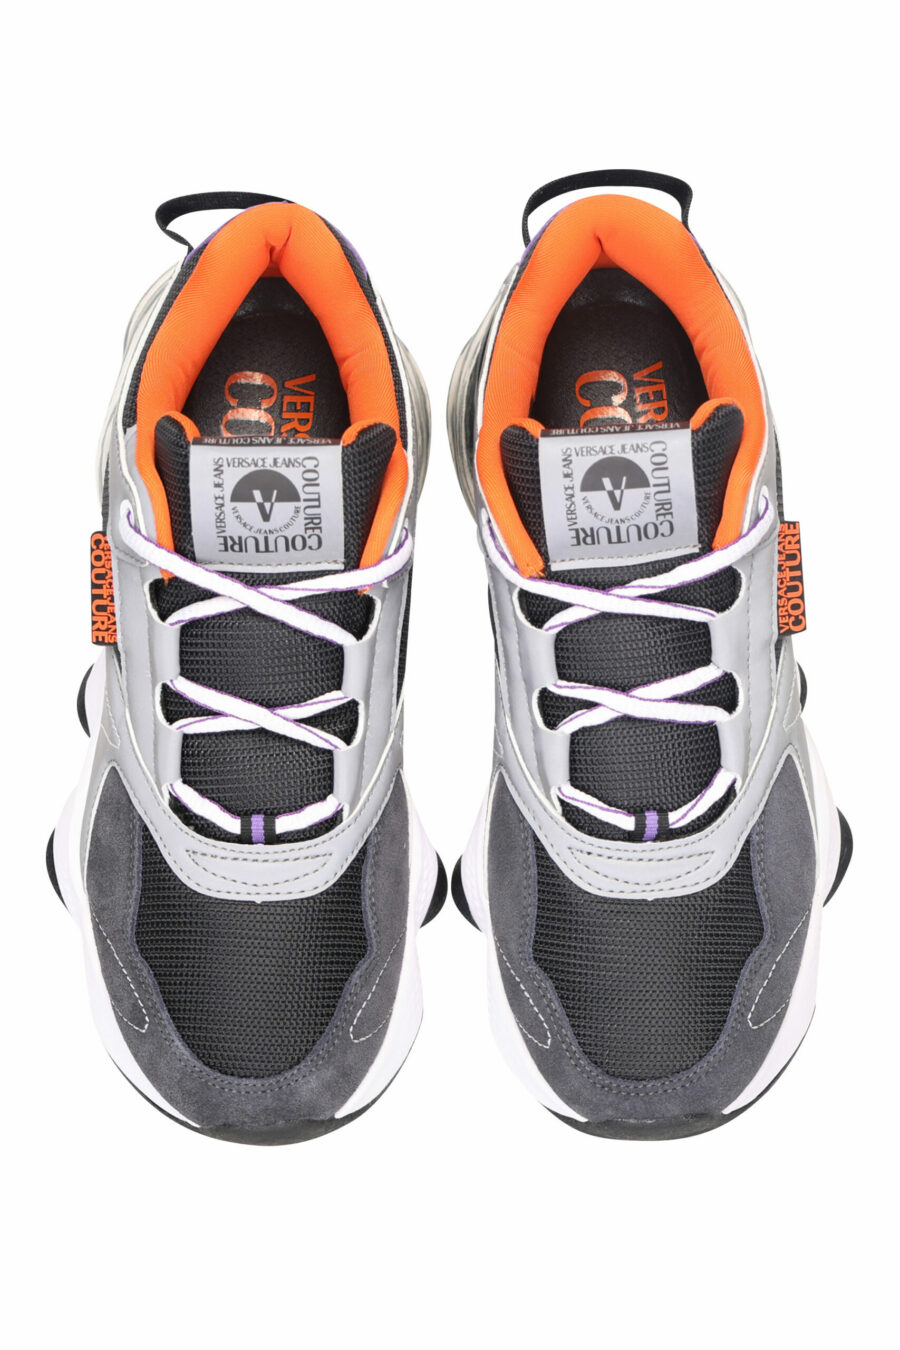 Sapatos mistos pretos com câmara de ar e mini-logotipo branco - 8052019485165 5 scaled